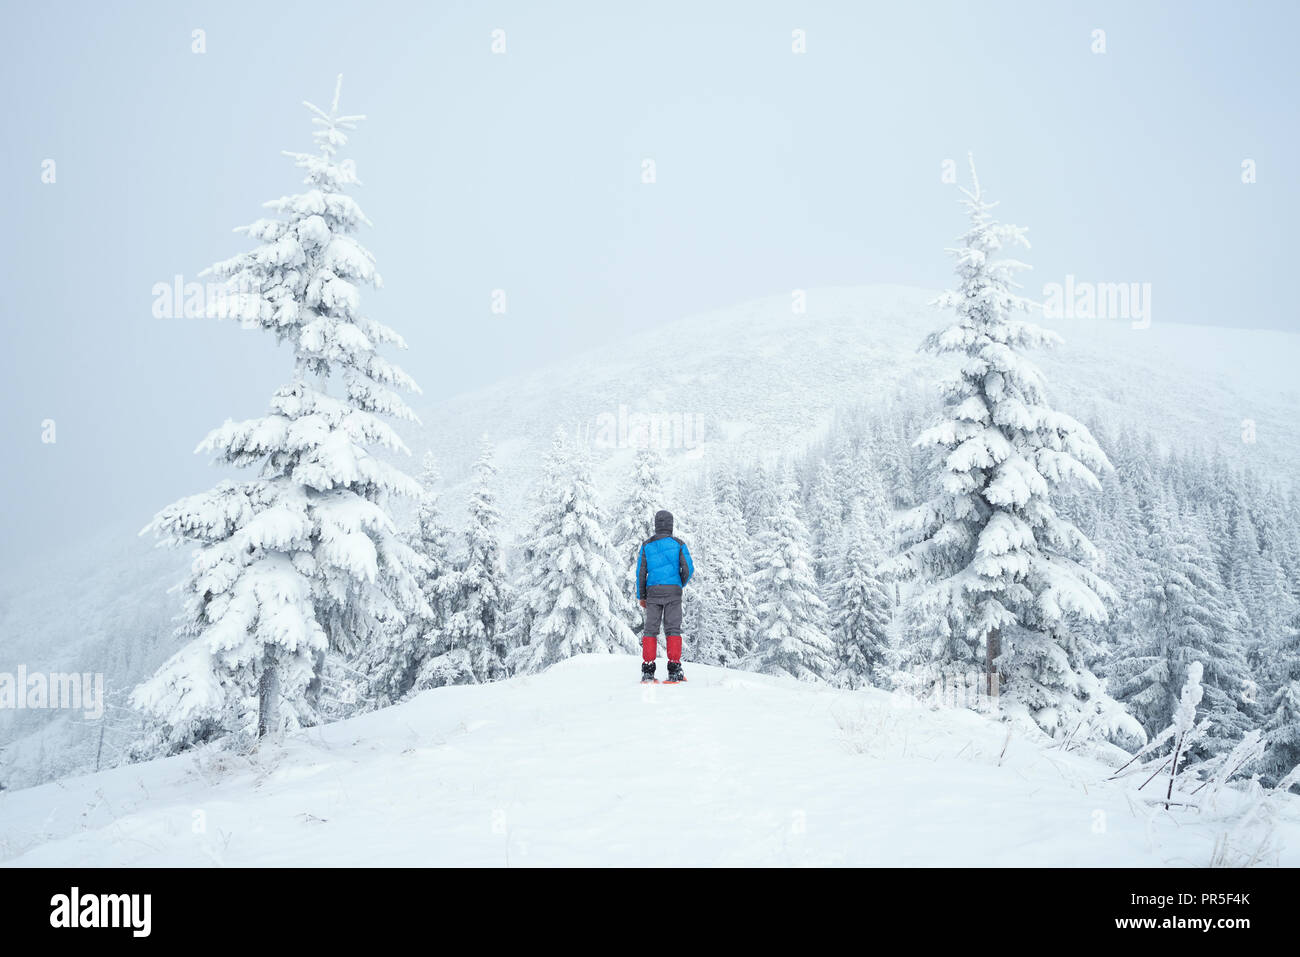 L'hiver dans les montagnes. L'homme est debout sur une colline et à la recherche en haut dans le brouillard. Forêt de sapin dans la neige après les chutes de neige Banque D'Images